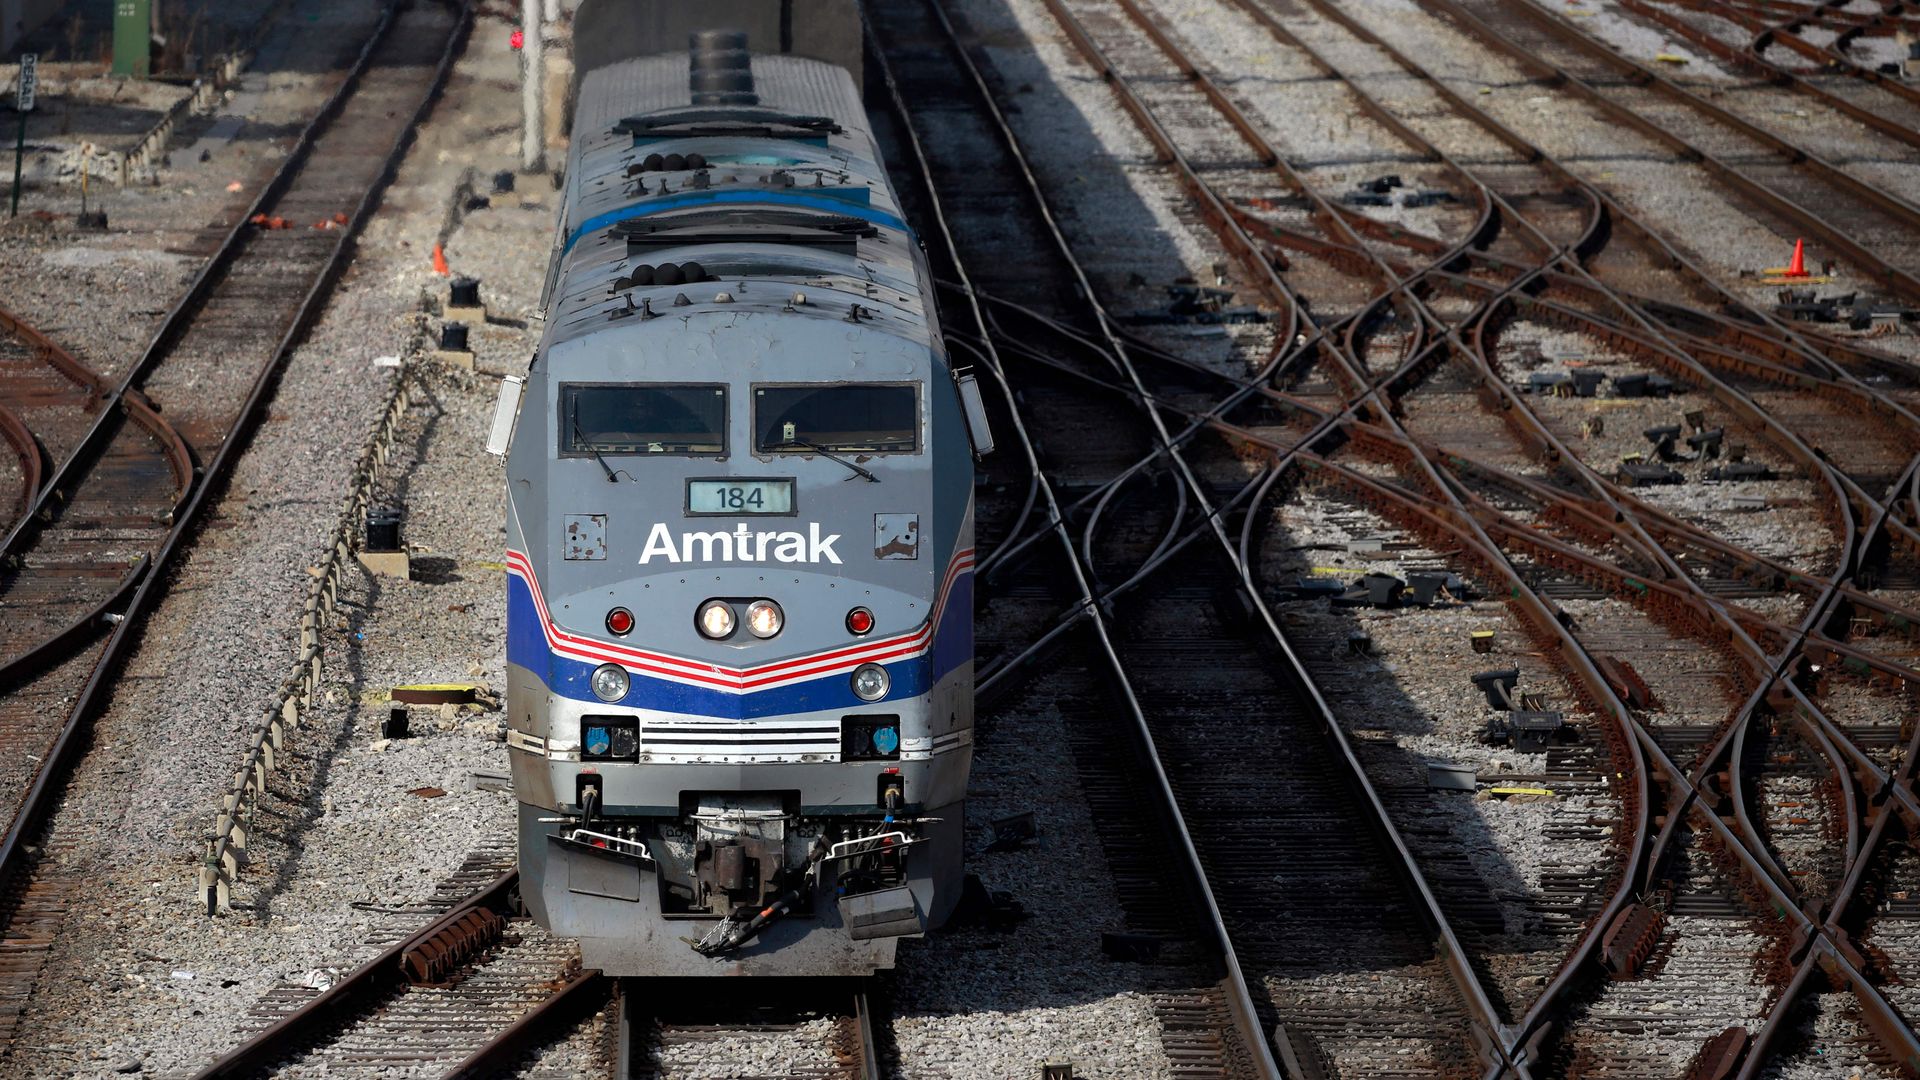 An Amtrak train on tracks 